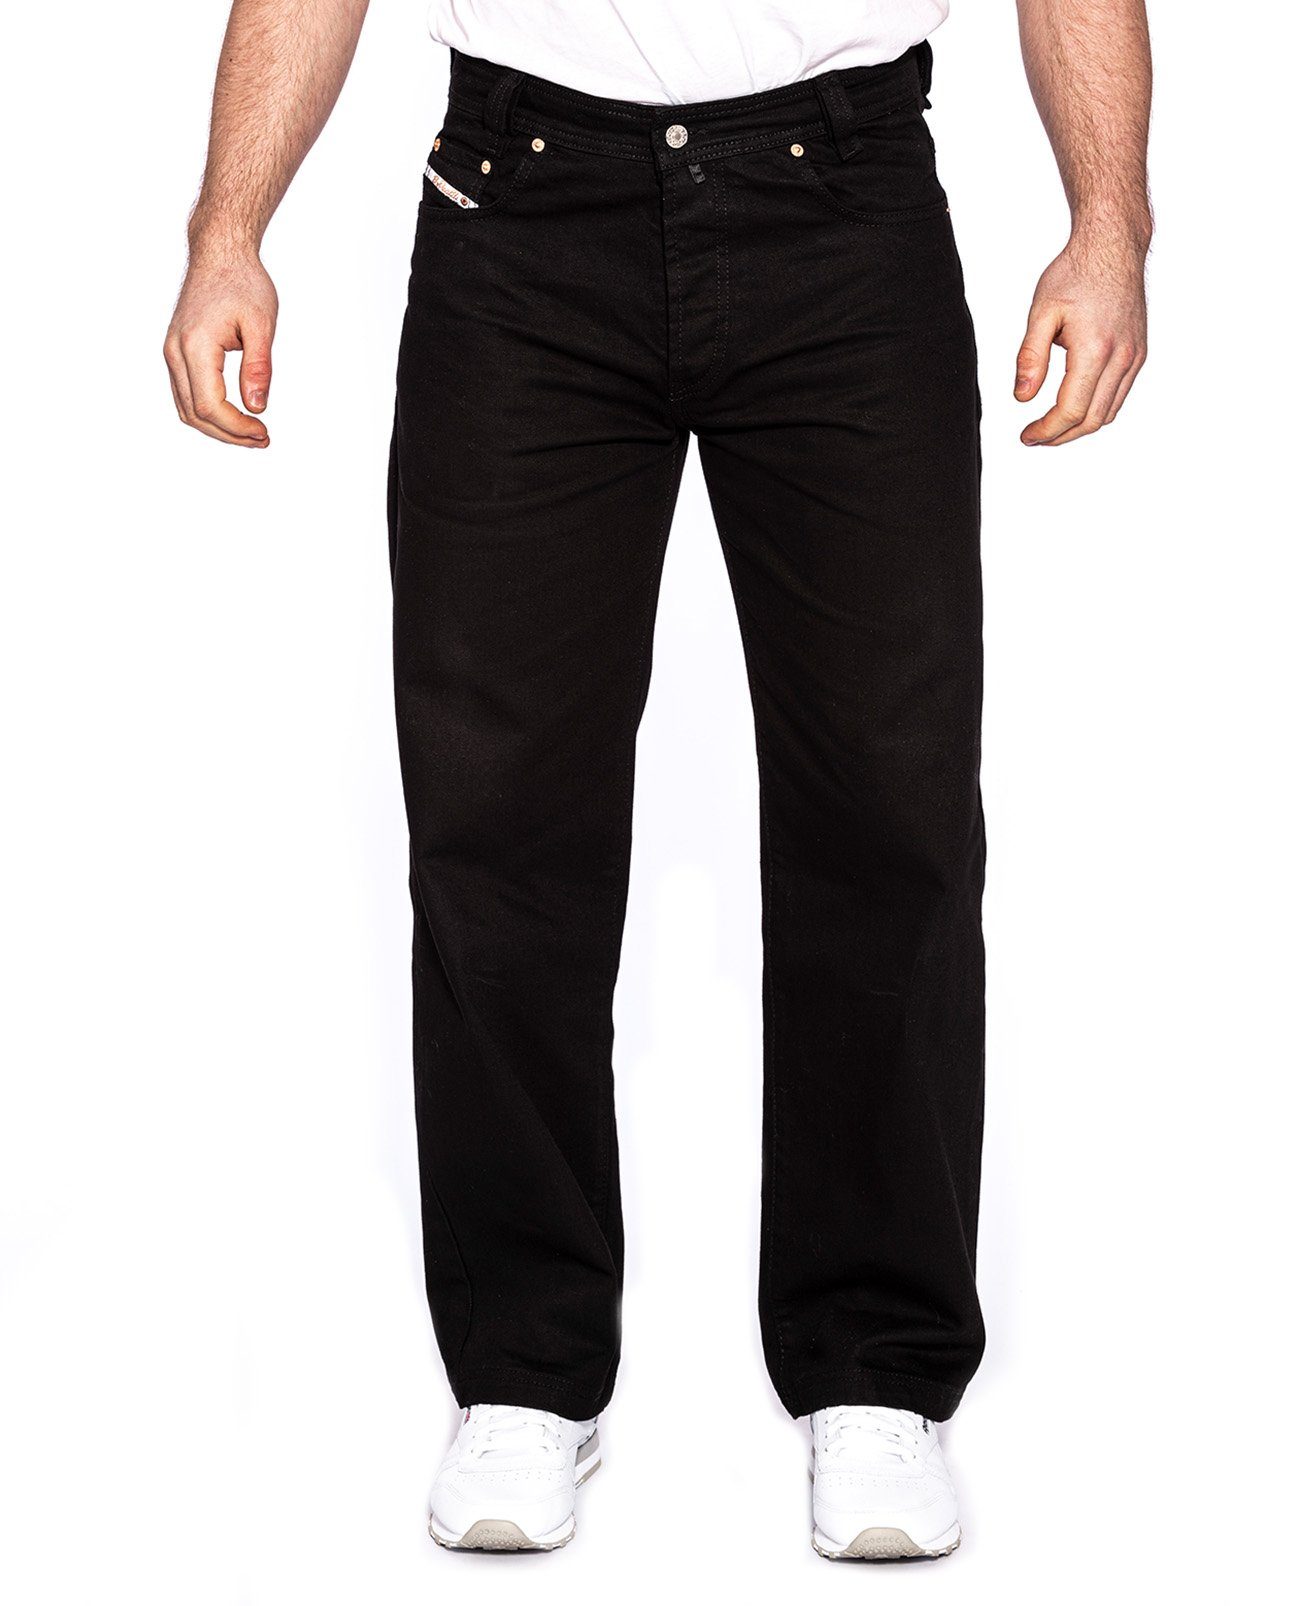 474 Schnitt Black Baggy Fit, Leg, Jeans Weite Gerader PICALDI Straight lässiger Zicco Jeans